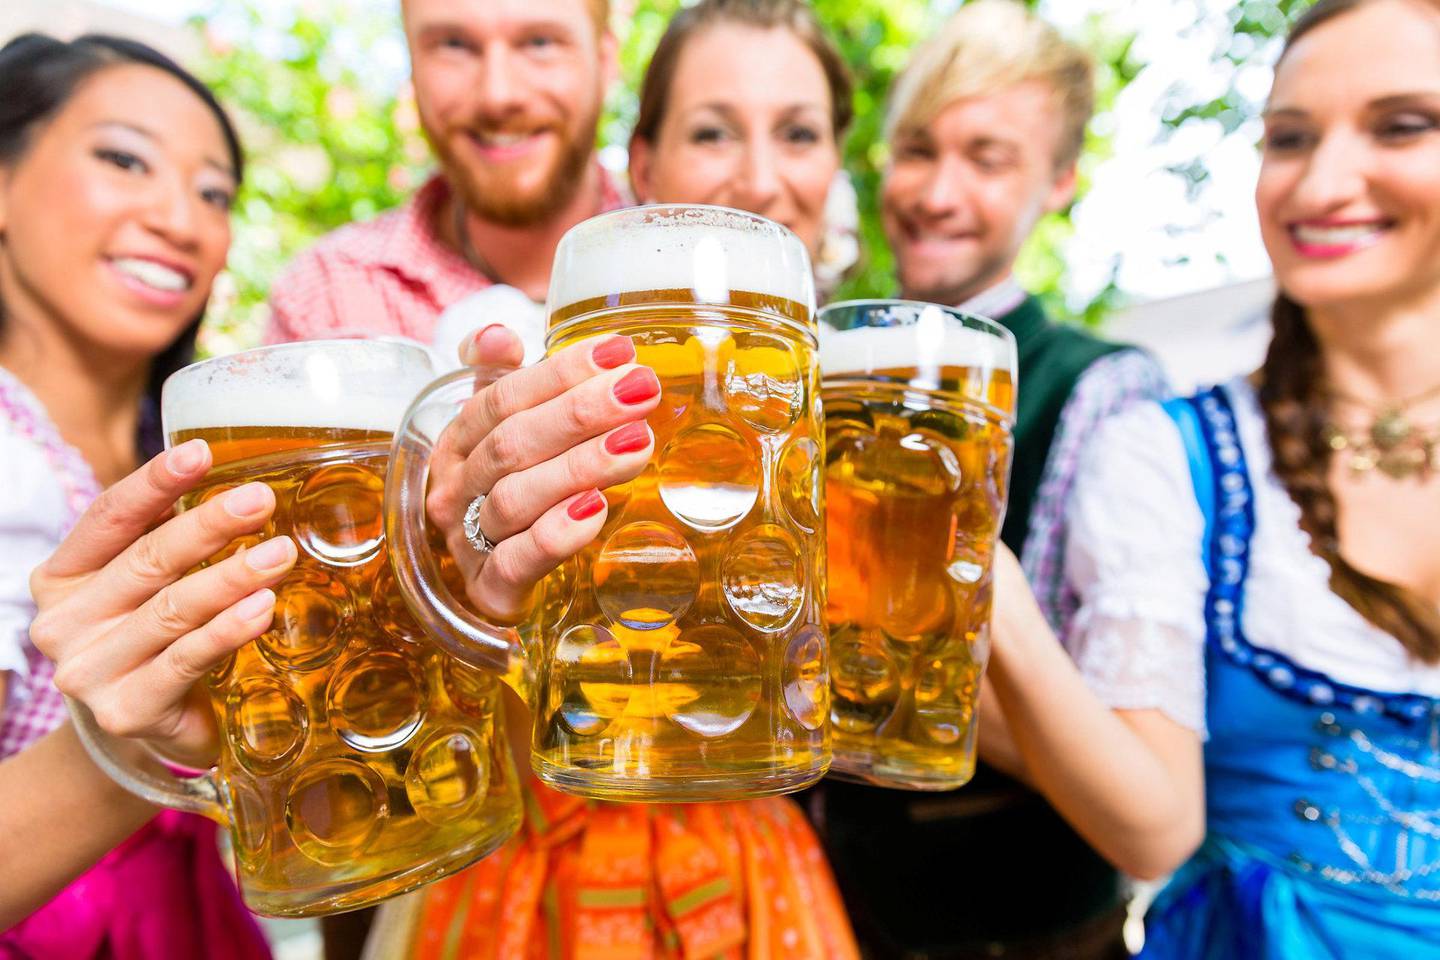 Øl, øl og mere øl! Og ompa til du dør. Opplev alle oktoberfesters mor i München. FOTO: ISTOCK